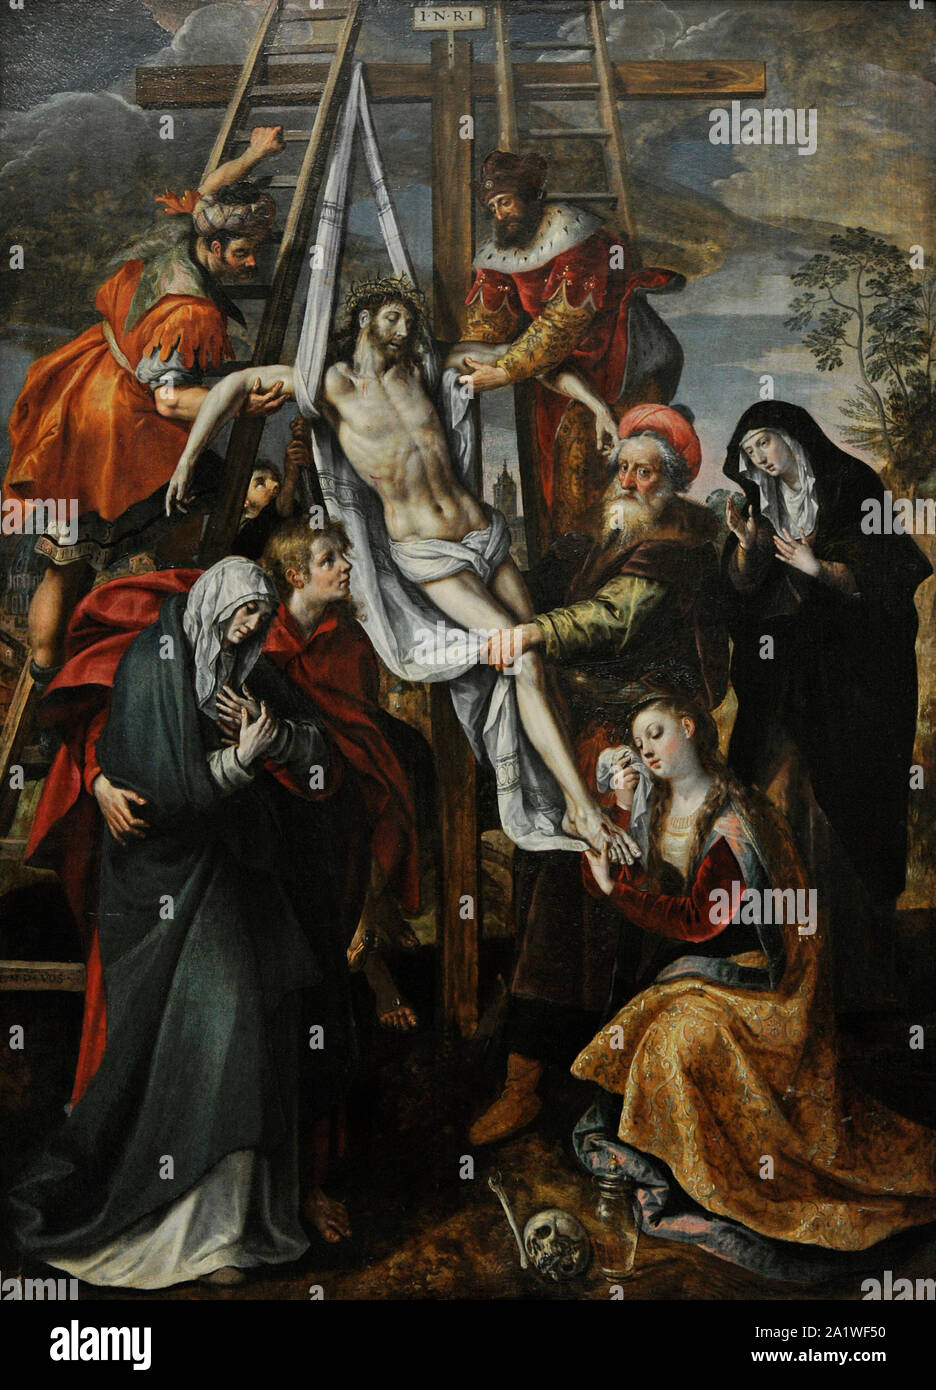 Maarten de Vos (1532-1603). El pintor flamenco. El Descendimiento de la Cruz. San Fernando, Real Academia de Bellas Artes de Madrid. España. Foto de stock